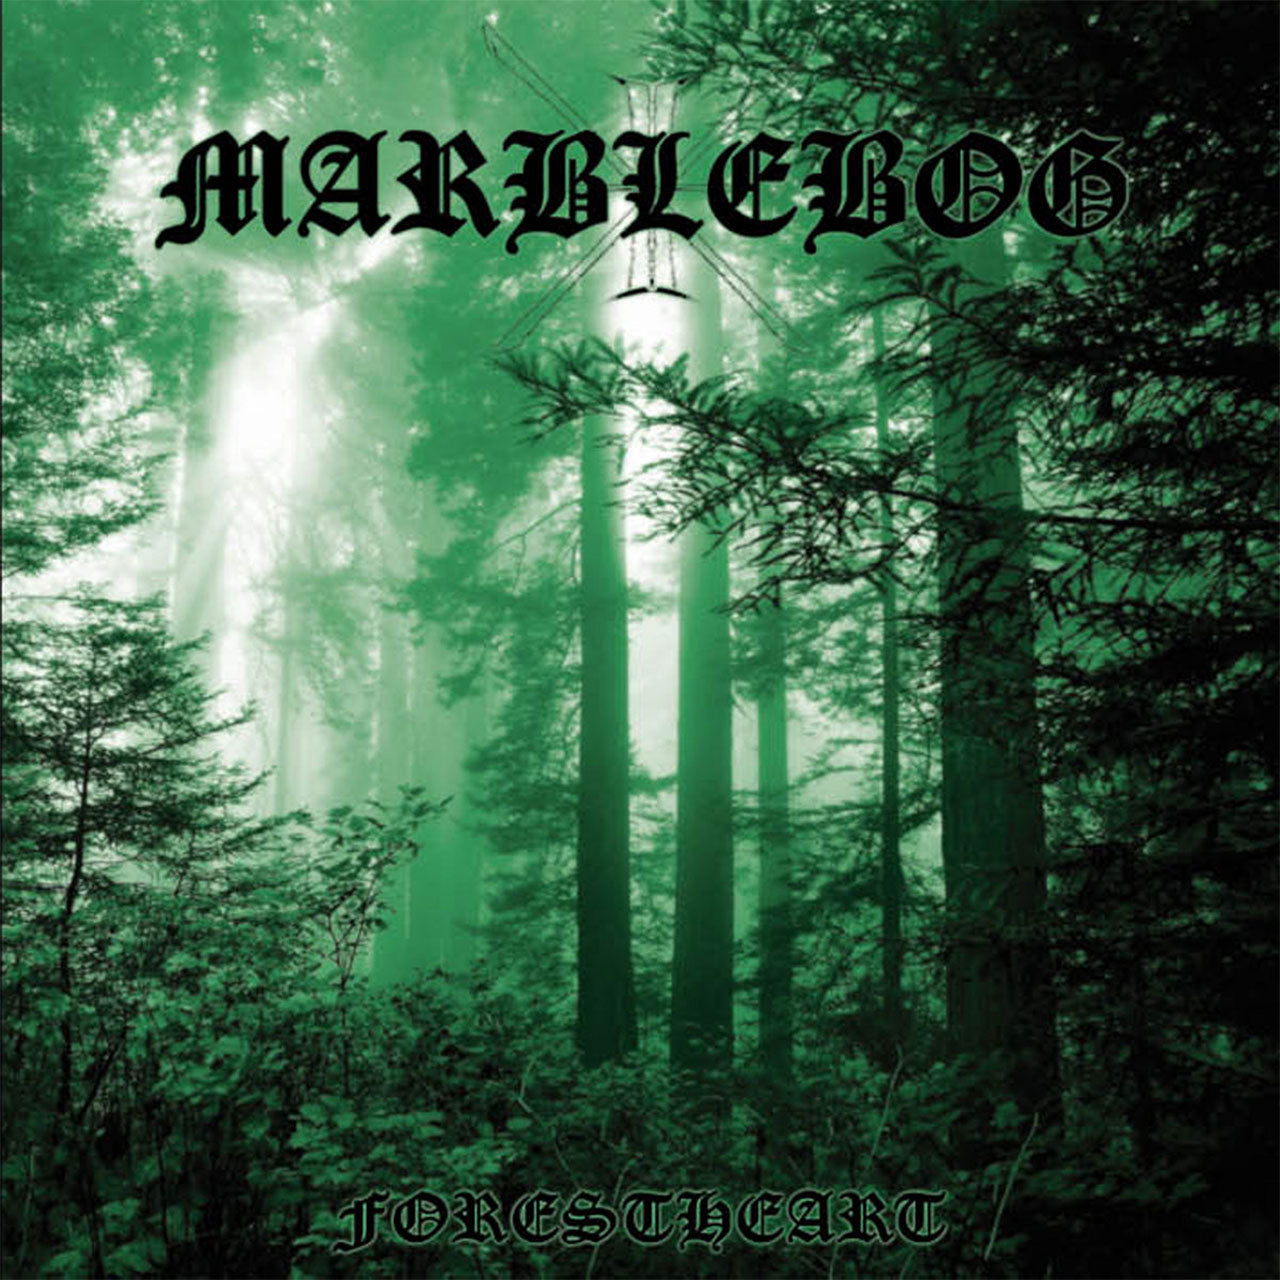 Marblebog - Forestheart (2007 Reissue) (CD)